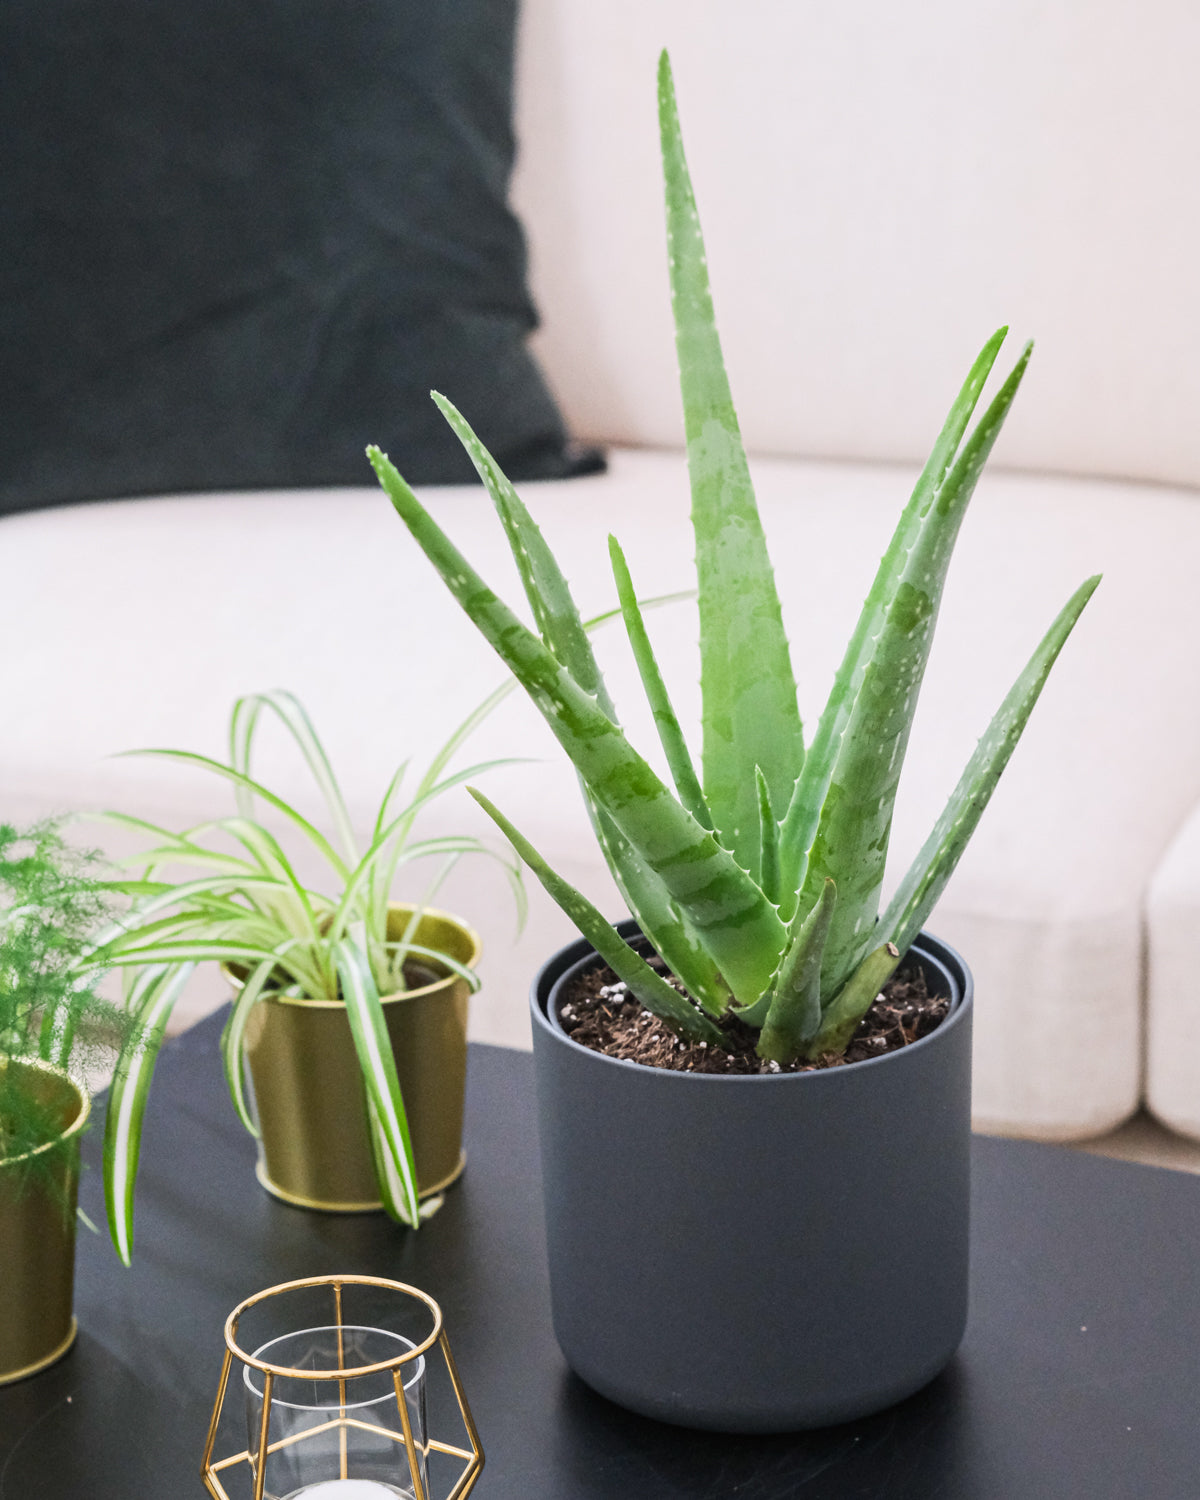 Aloe vera in grauem Topf vor einer Grünlilie auf dem Wohnzimmertisch